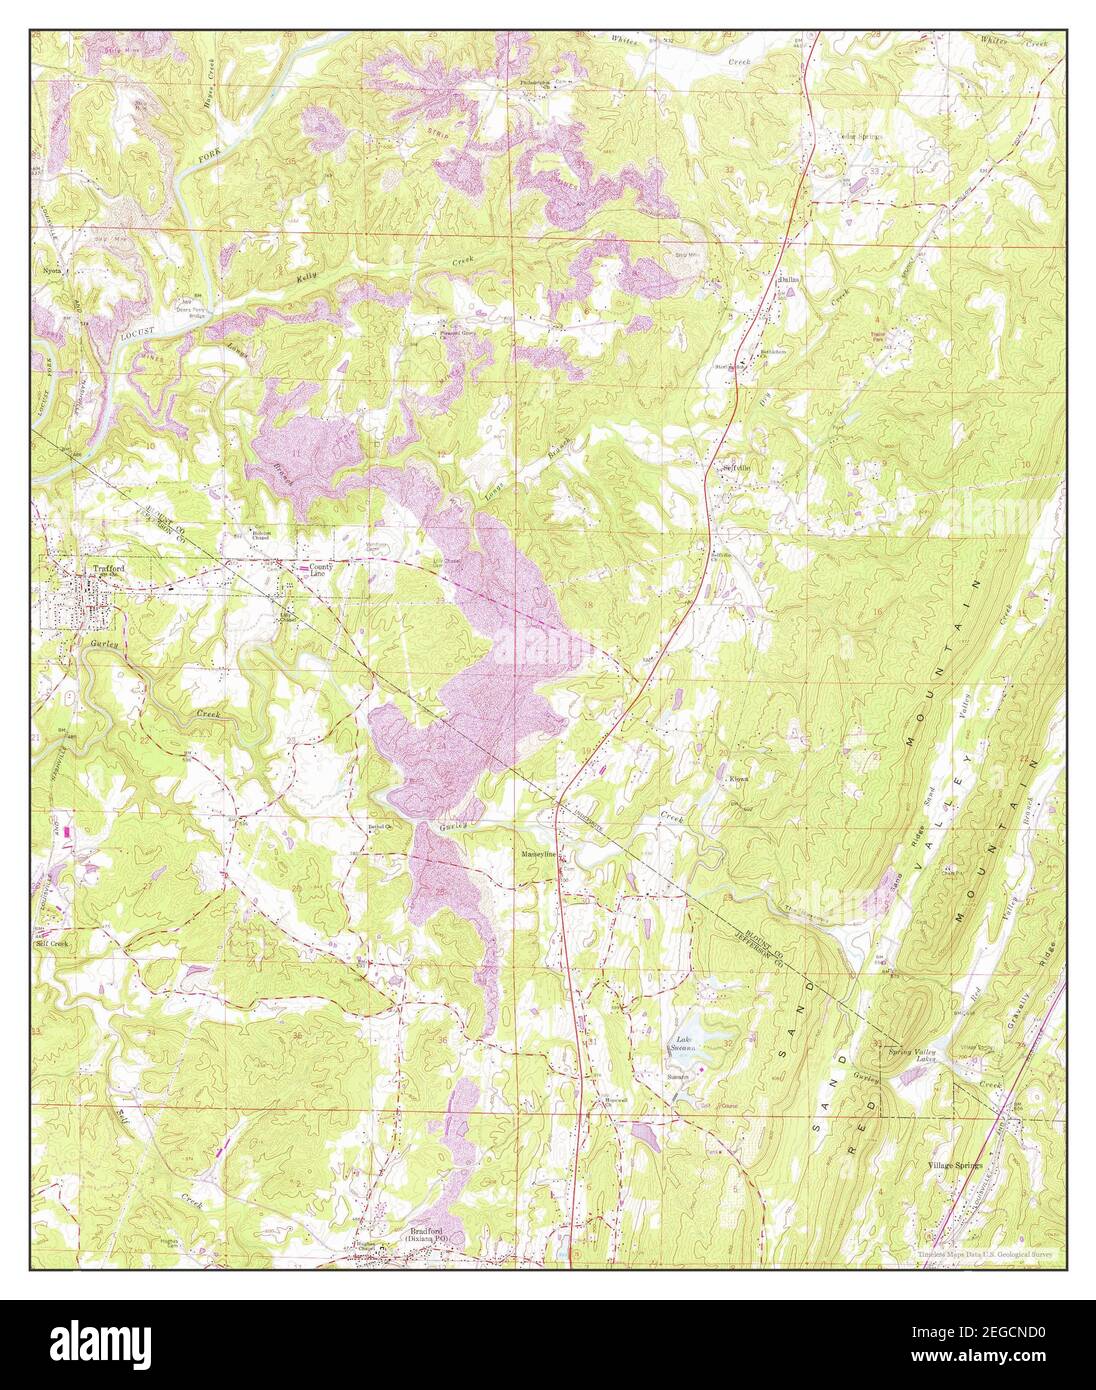 Trafford, Alabama, Karte 1961, 1:24000, Vereinigte Staaten von Amerika von Timeless Maps, Daten U.S. Geological Survey Stockfoto